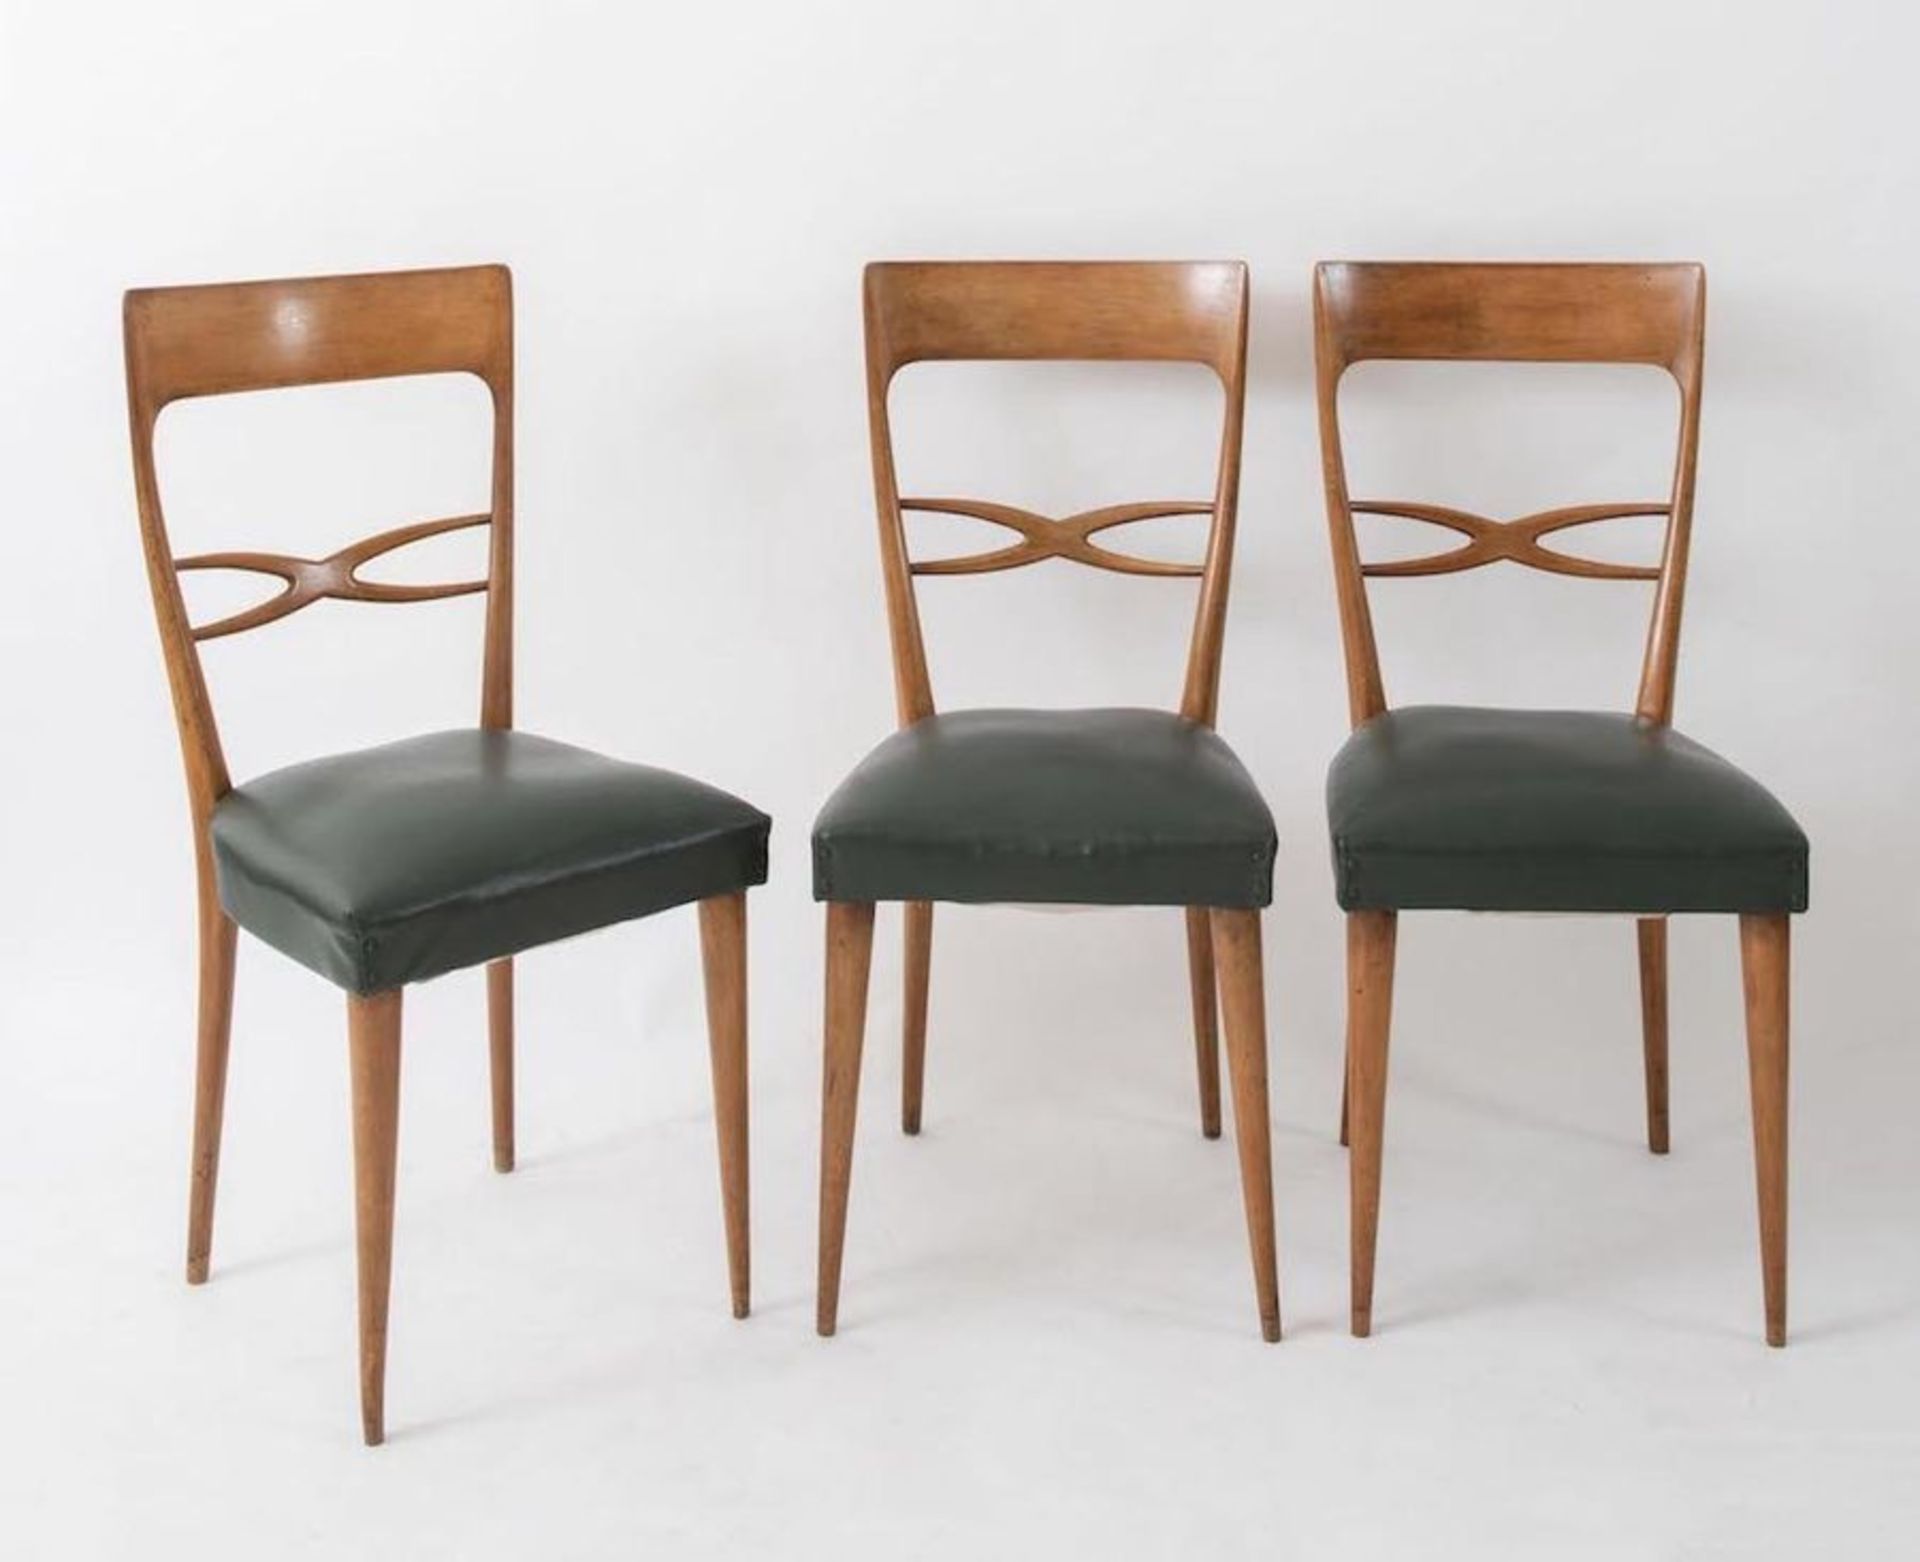 MELCHIORRE BEGA, attr. Sei sedie in legno con rivestimento in pelle. Prod. Italia, 1960 ca. Cm 95x42 - Image 2 of 3